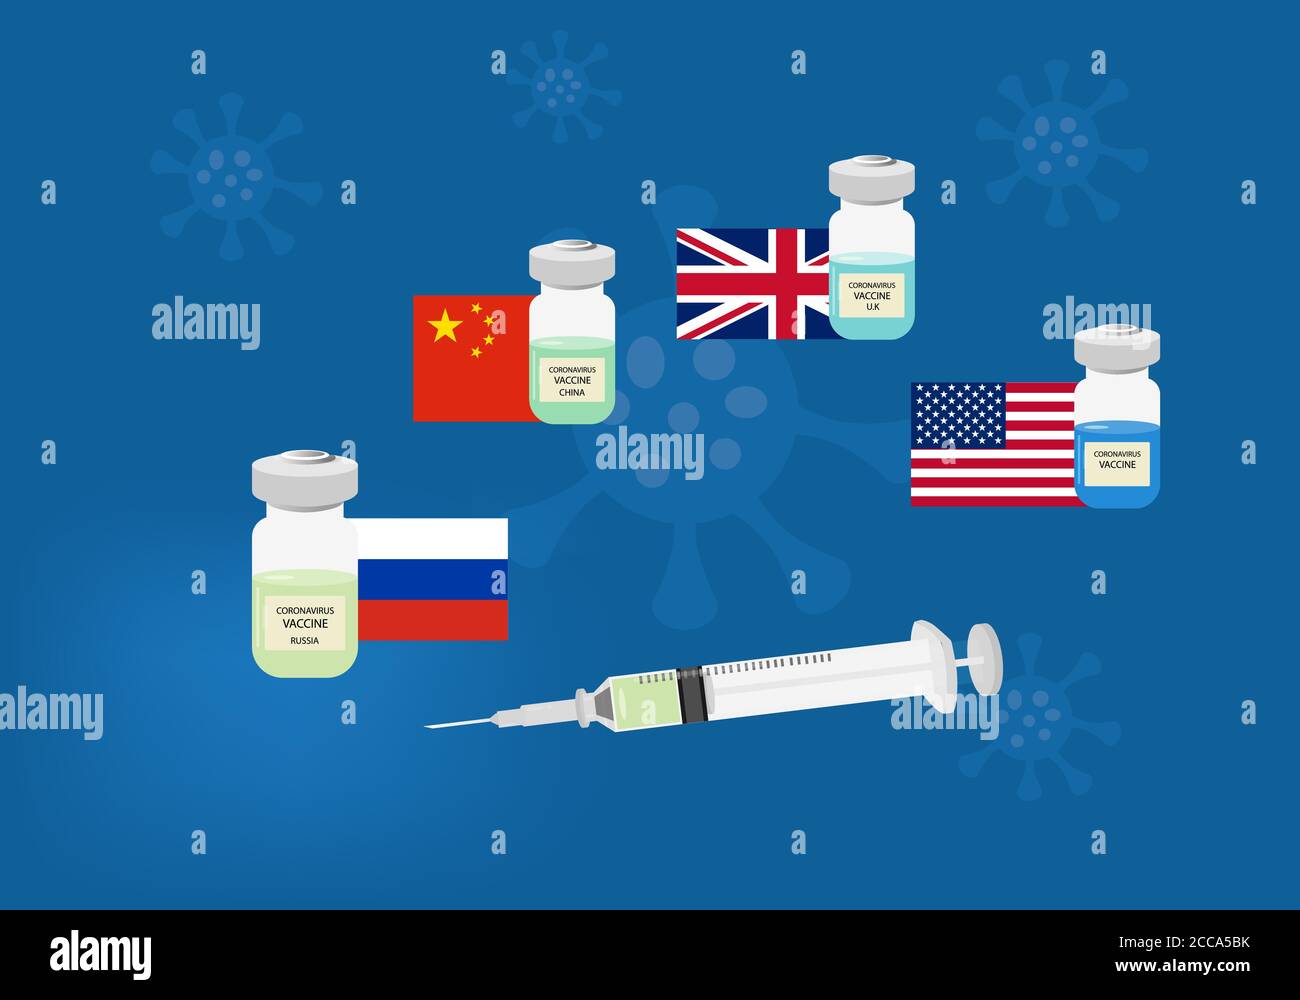 Il vaccino del coronavirus è stato recentemente sviluppato da diversi paesi. Illustrazione di siringhe e flaconi di vaccino, Russia, Cina, Regno Unito e Stati Uniti fl Illustrazione Vettoriale